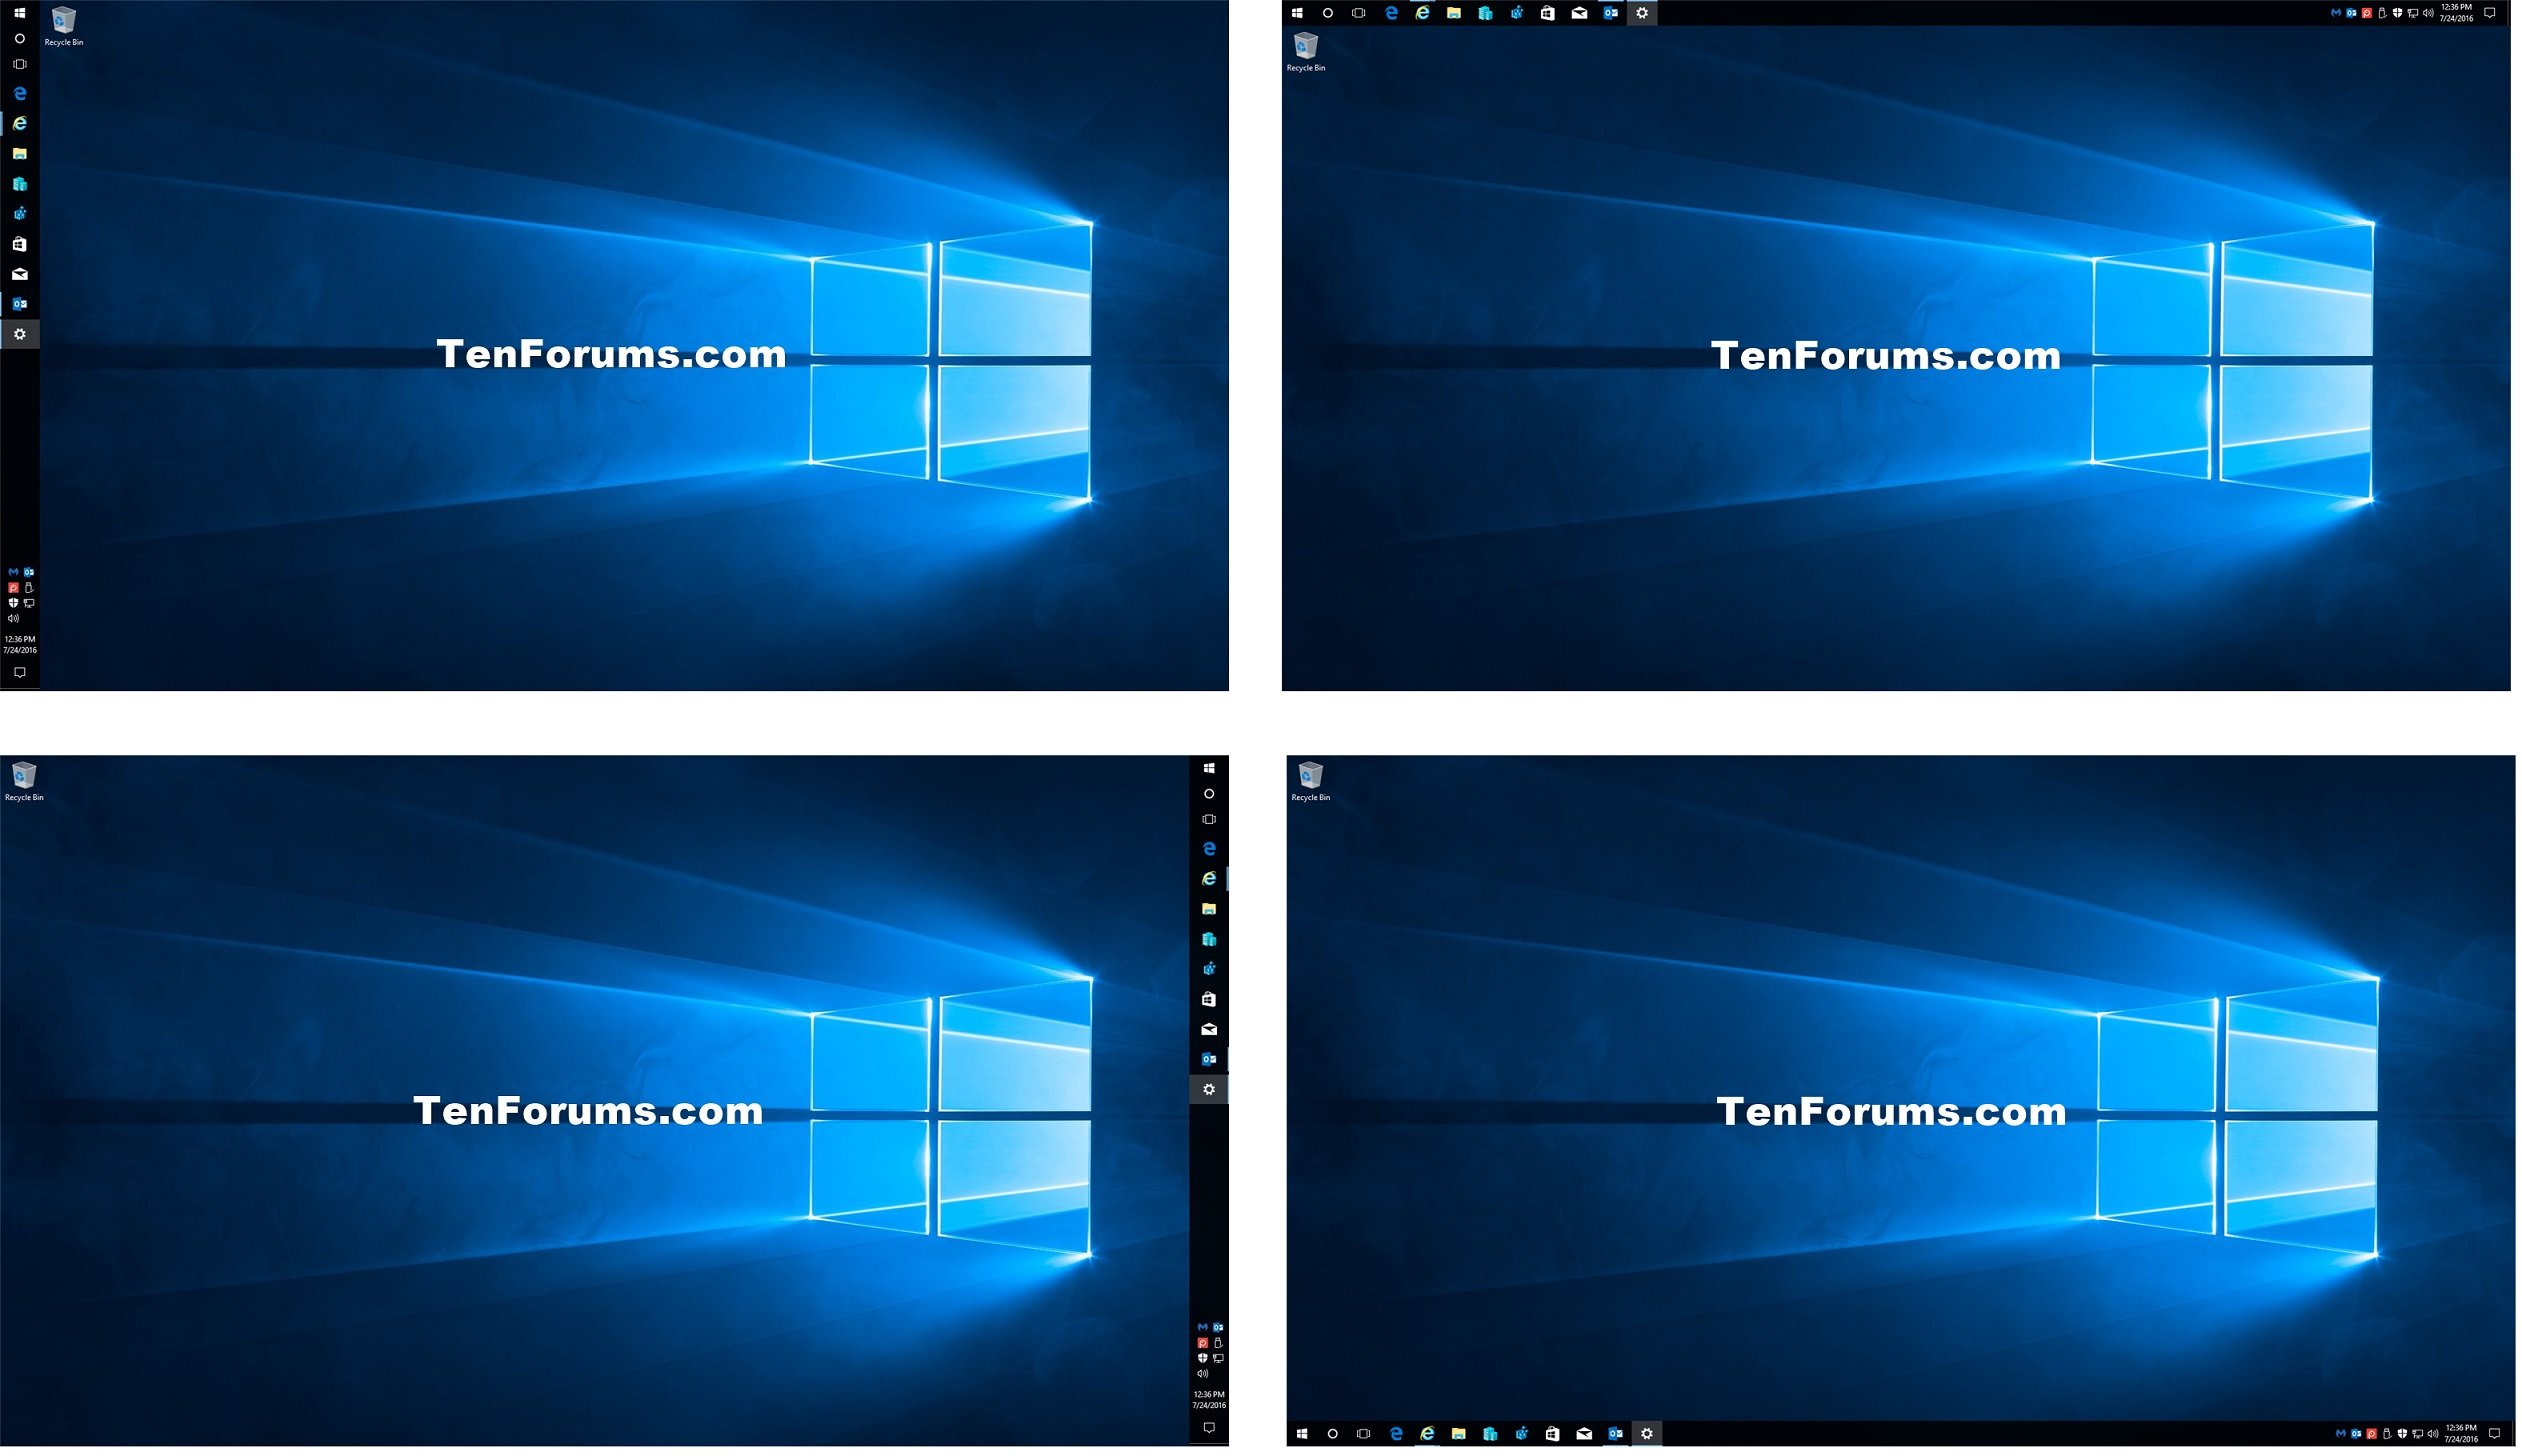 Change Taskbar Location On Screen In Windows 10 Tutorials